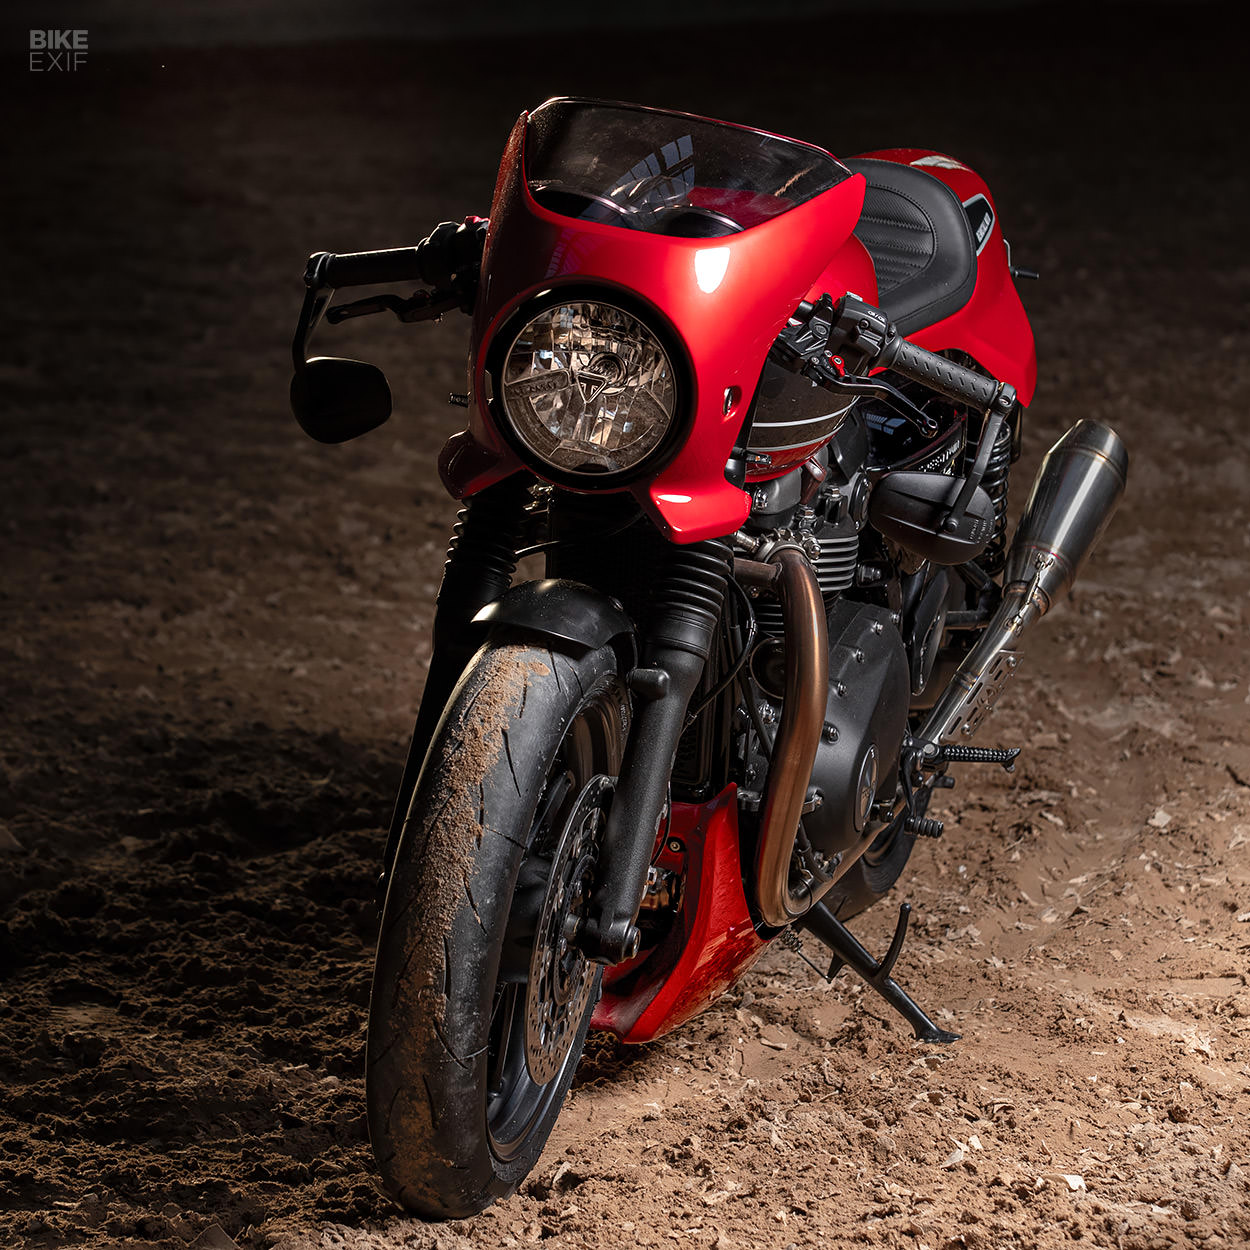 Triumph Speed Twin custom kit by Rennstall Moto